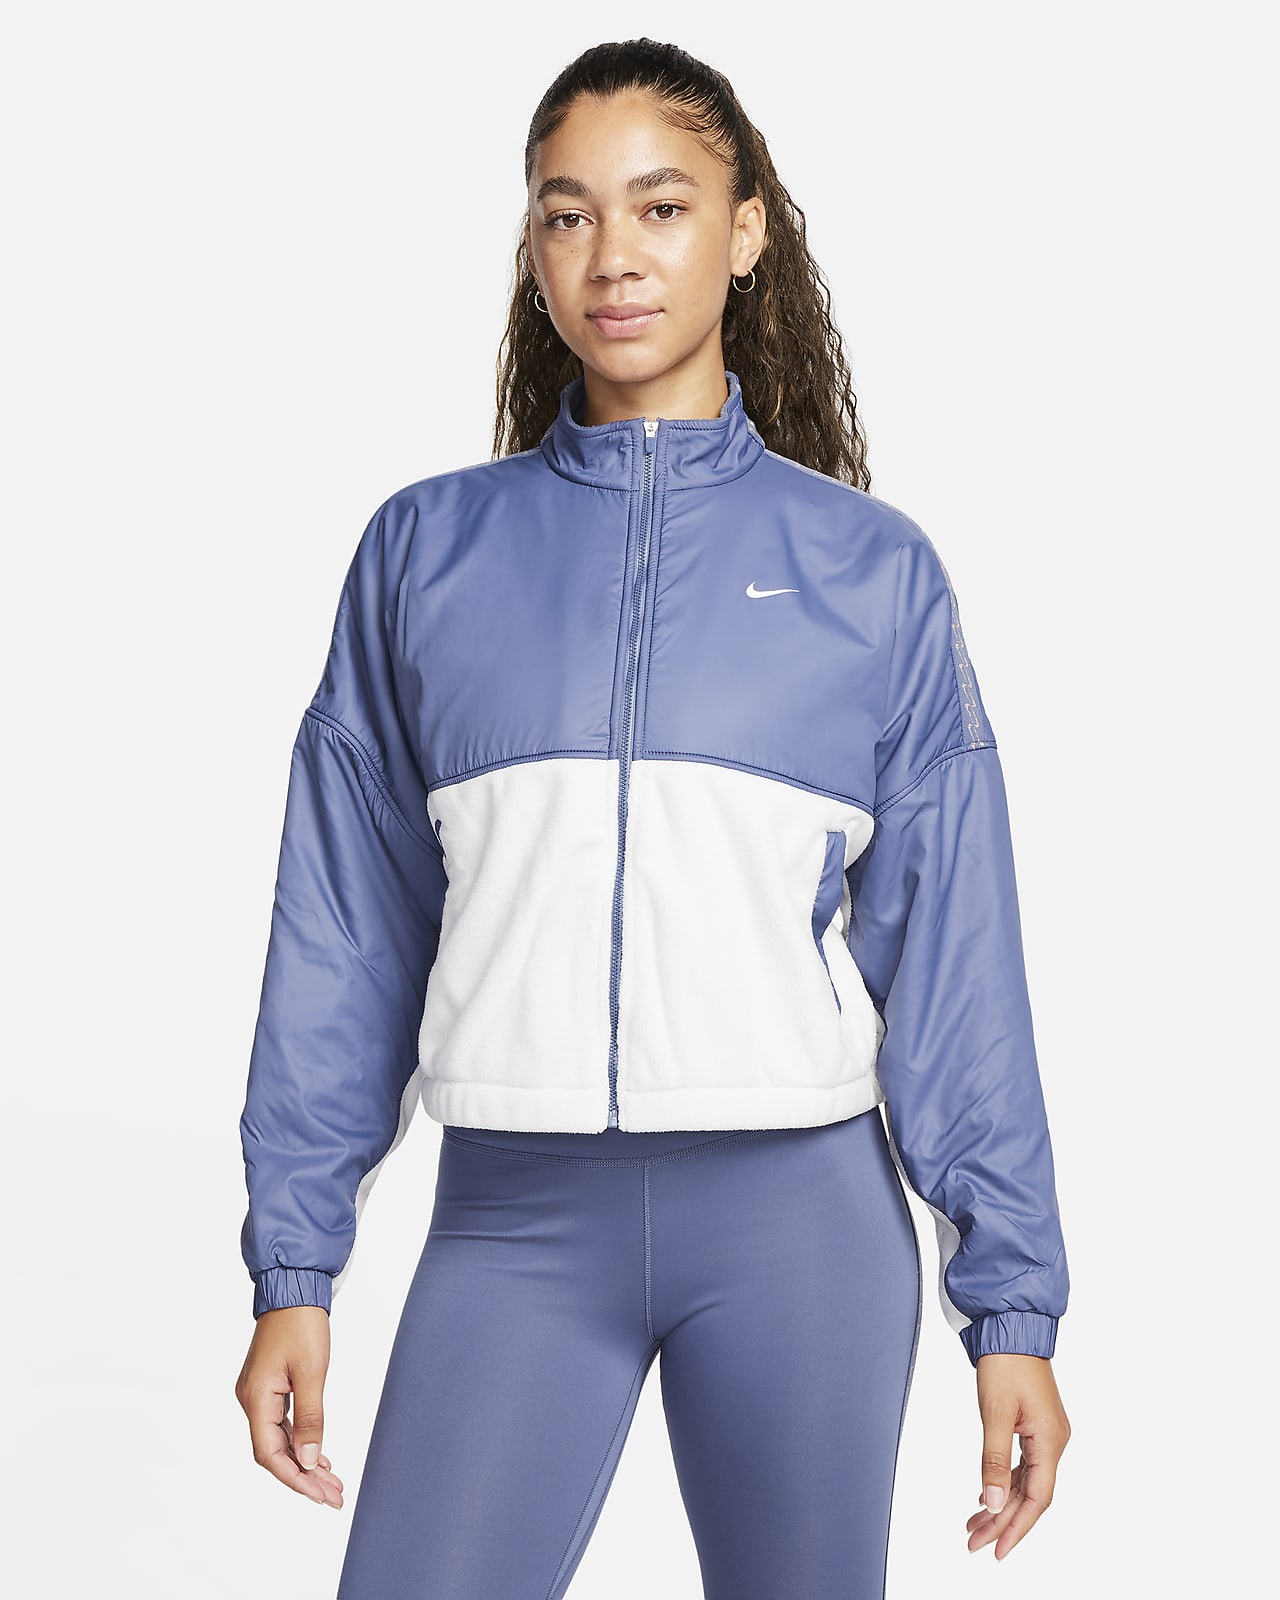 Nike Therma-FIT One damesjack van fleece met rits over de hele lengte